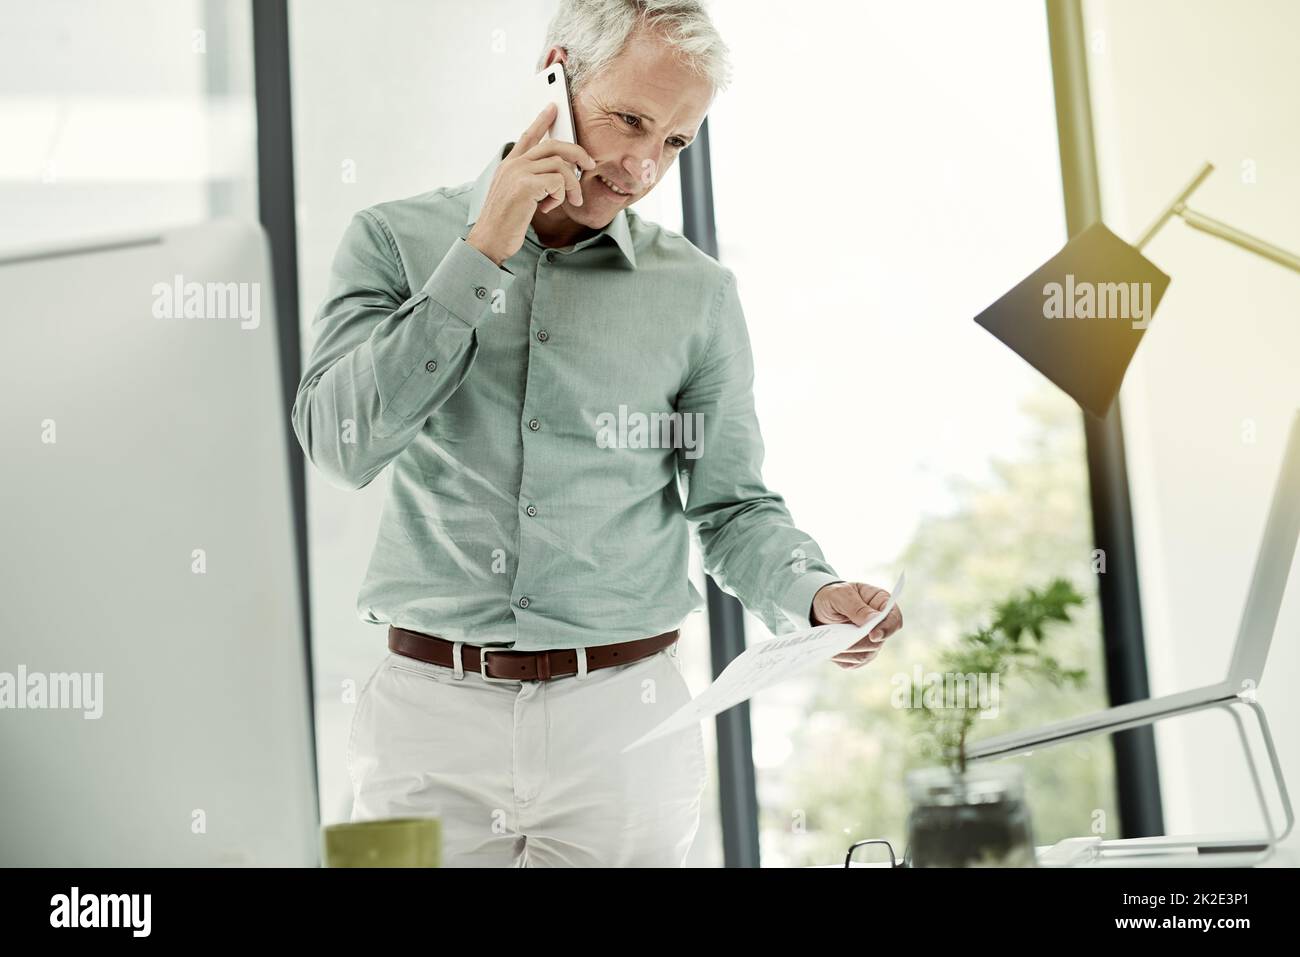 Im Gespräch über den Vertrag. Aufnahme eines reifen Geschäftsmannes, der am Telefon telefoniert, während er an seinem Schreibtisch in einem Büro steht. Stockfoto